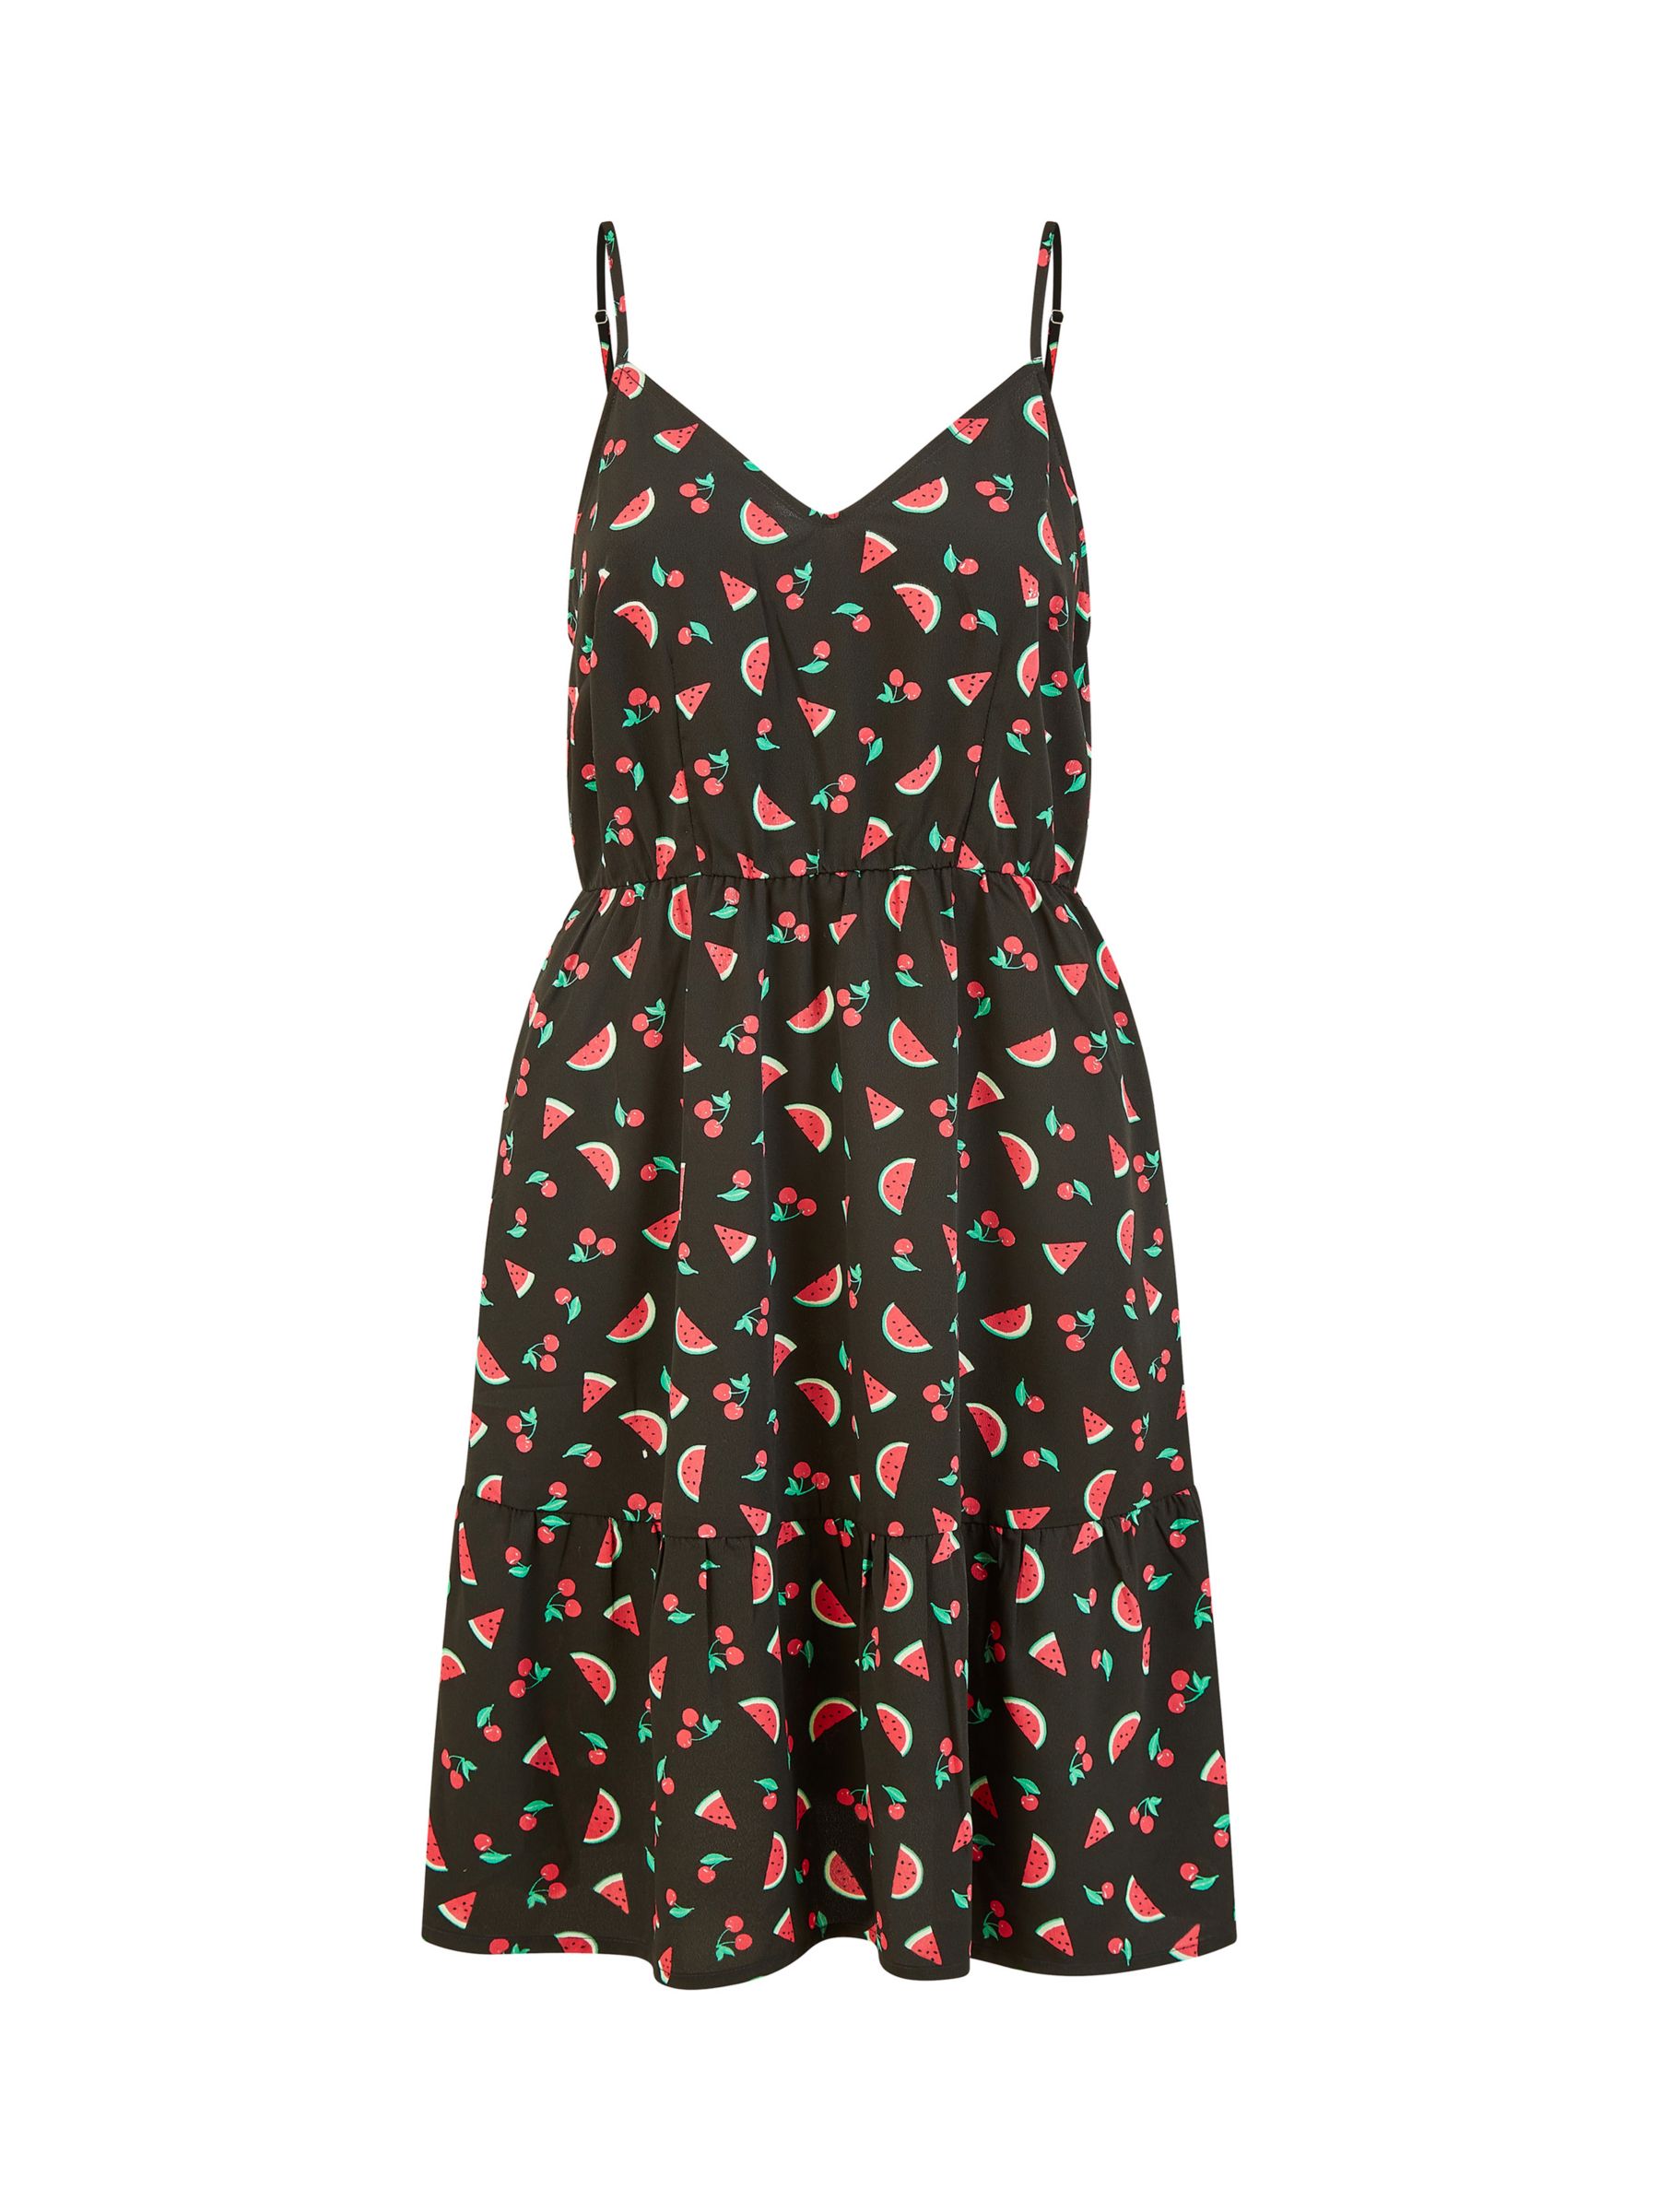 Yumi Watermelon Mini Dress, Black/Multi, 8